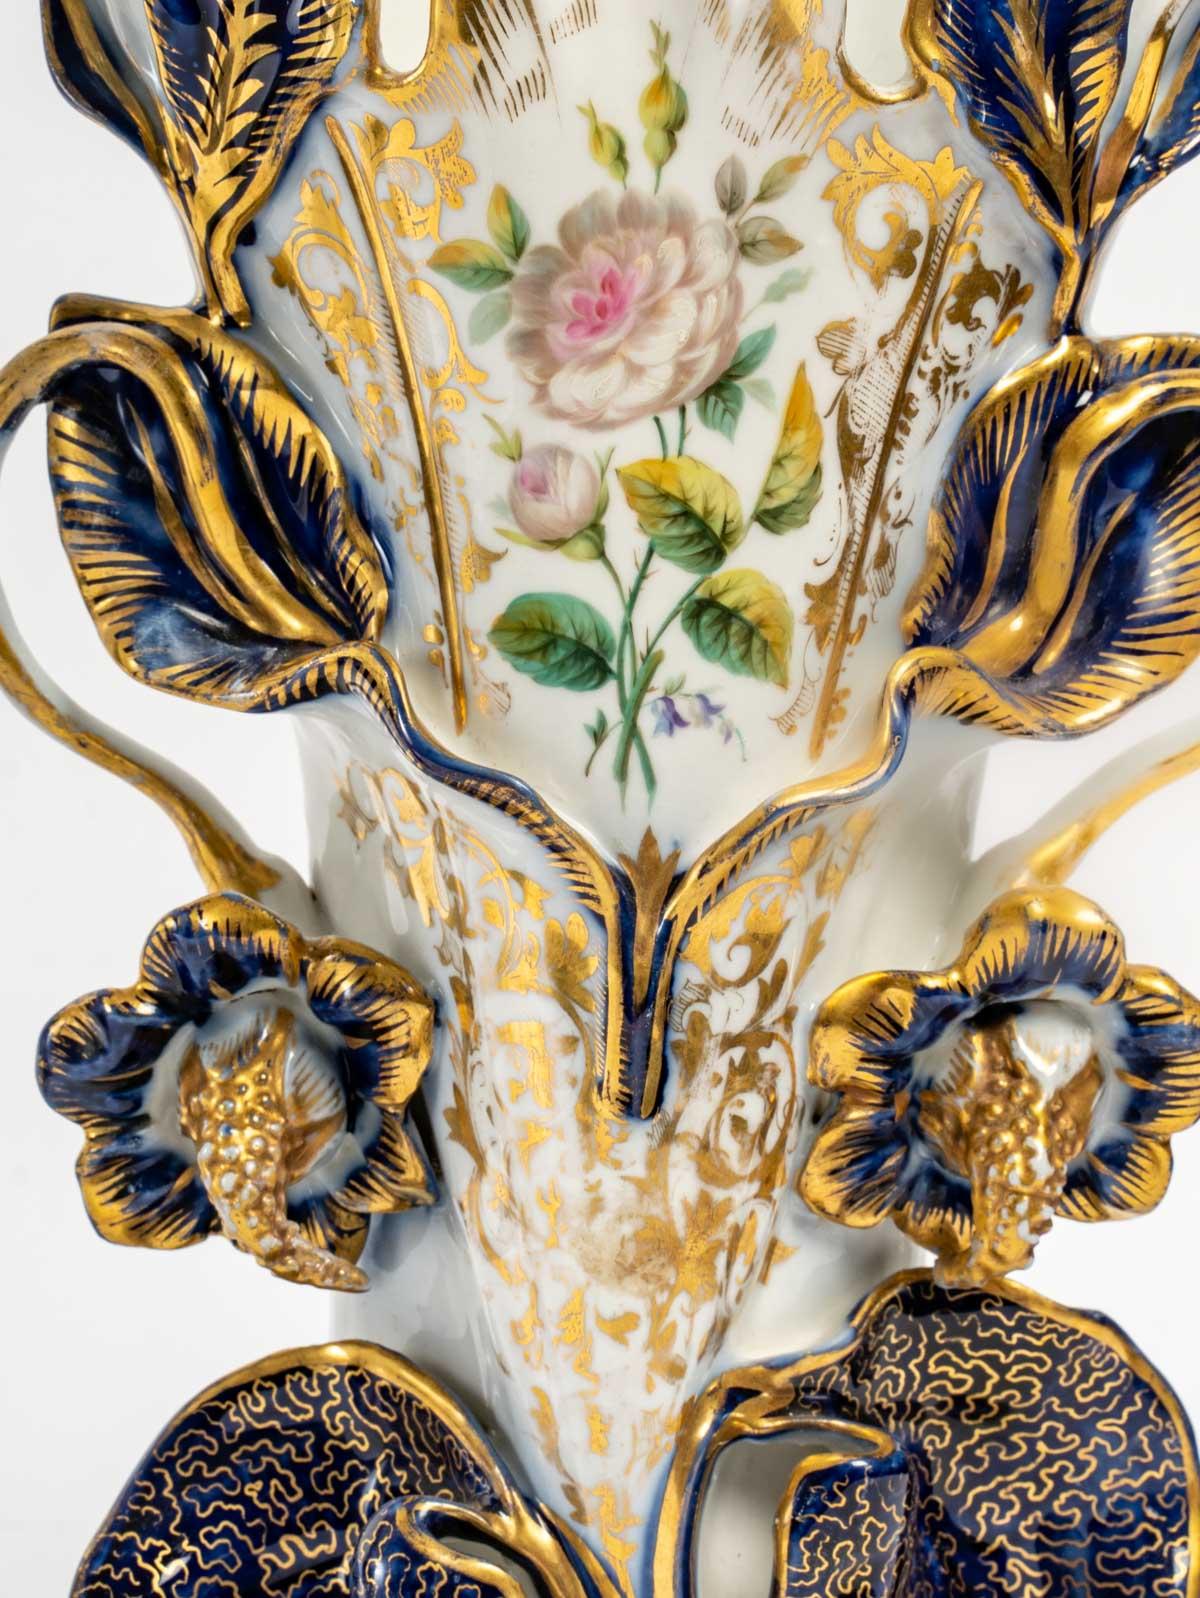 Large pair of Valentine Porcelain vases, 19th century, 1880.
Measures: H: 40 cm, W: 22 cm, D: 17 cm.